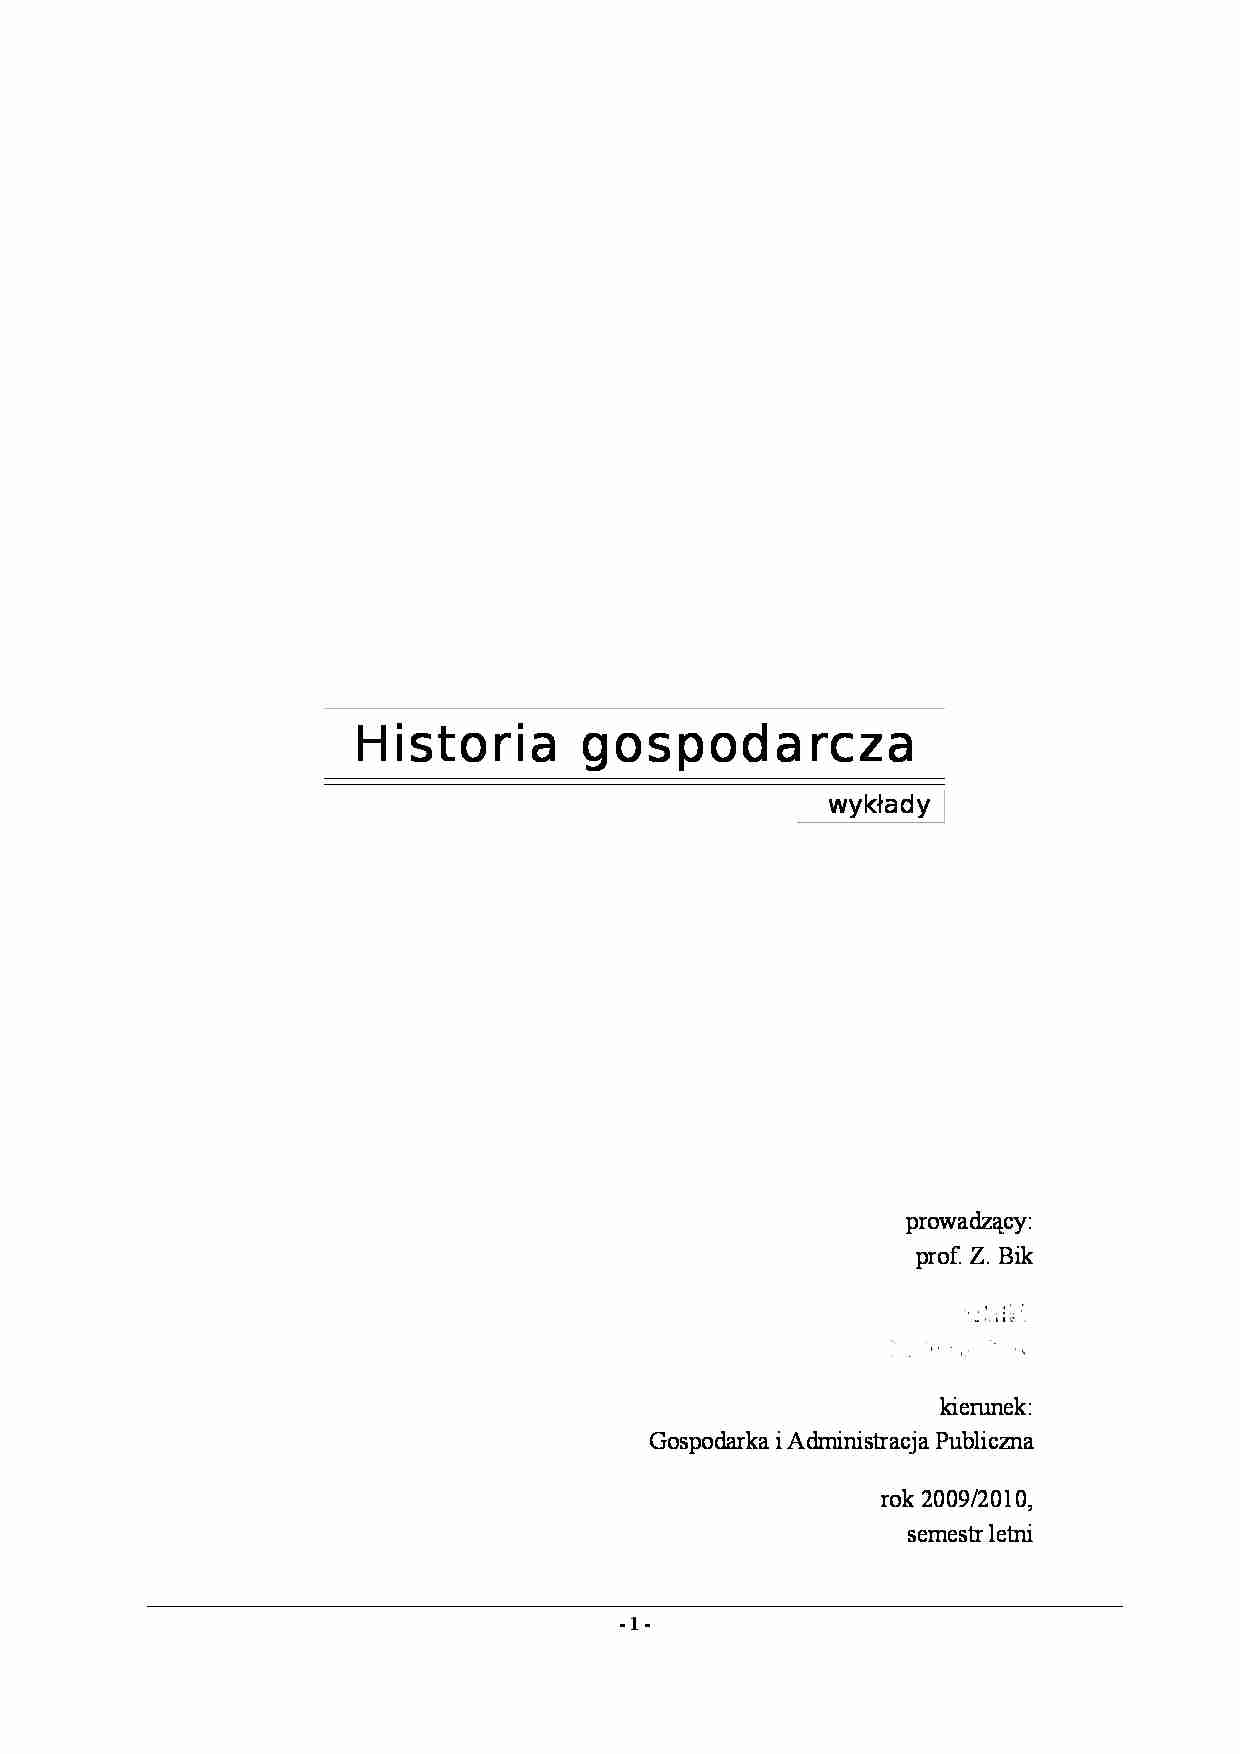 Historia gospodarcza - wykłady - strona 1